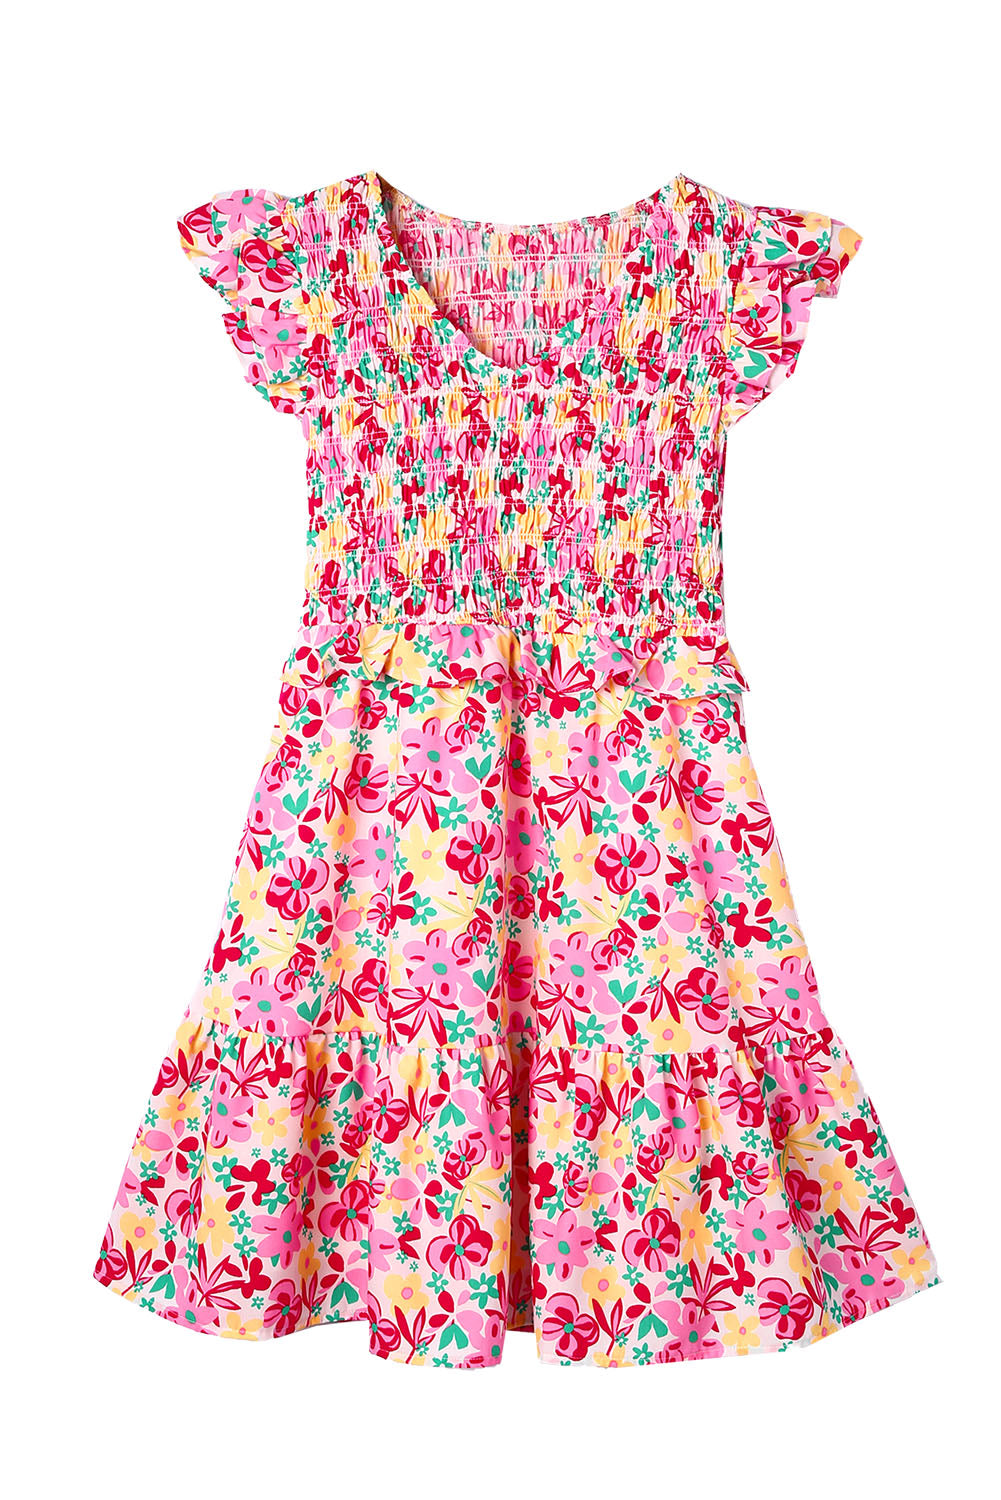 Robe florale multicolore à corsage smocké et bordure à volants